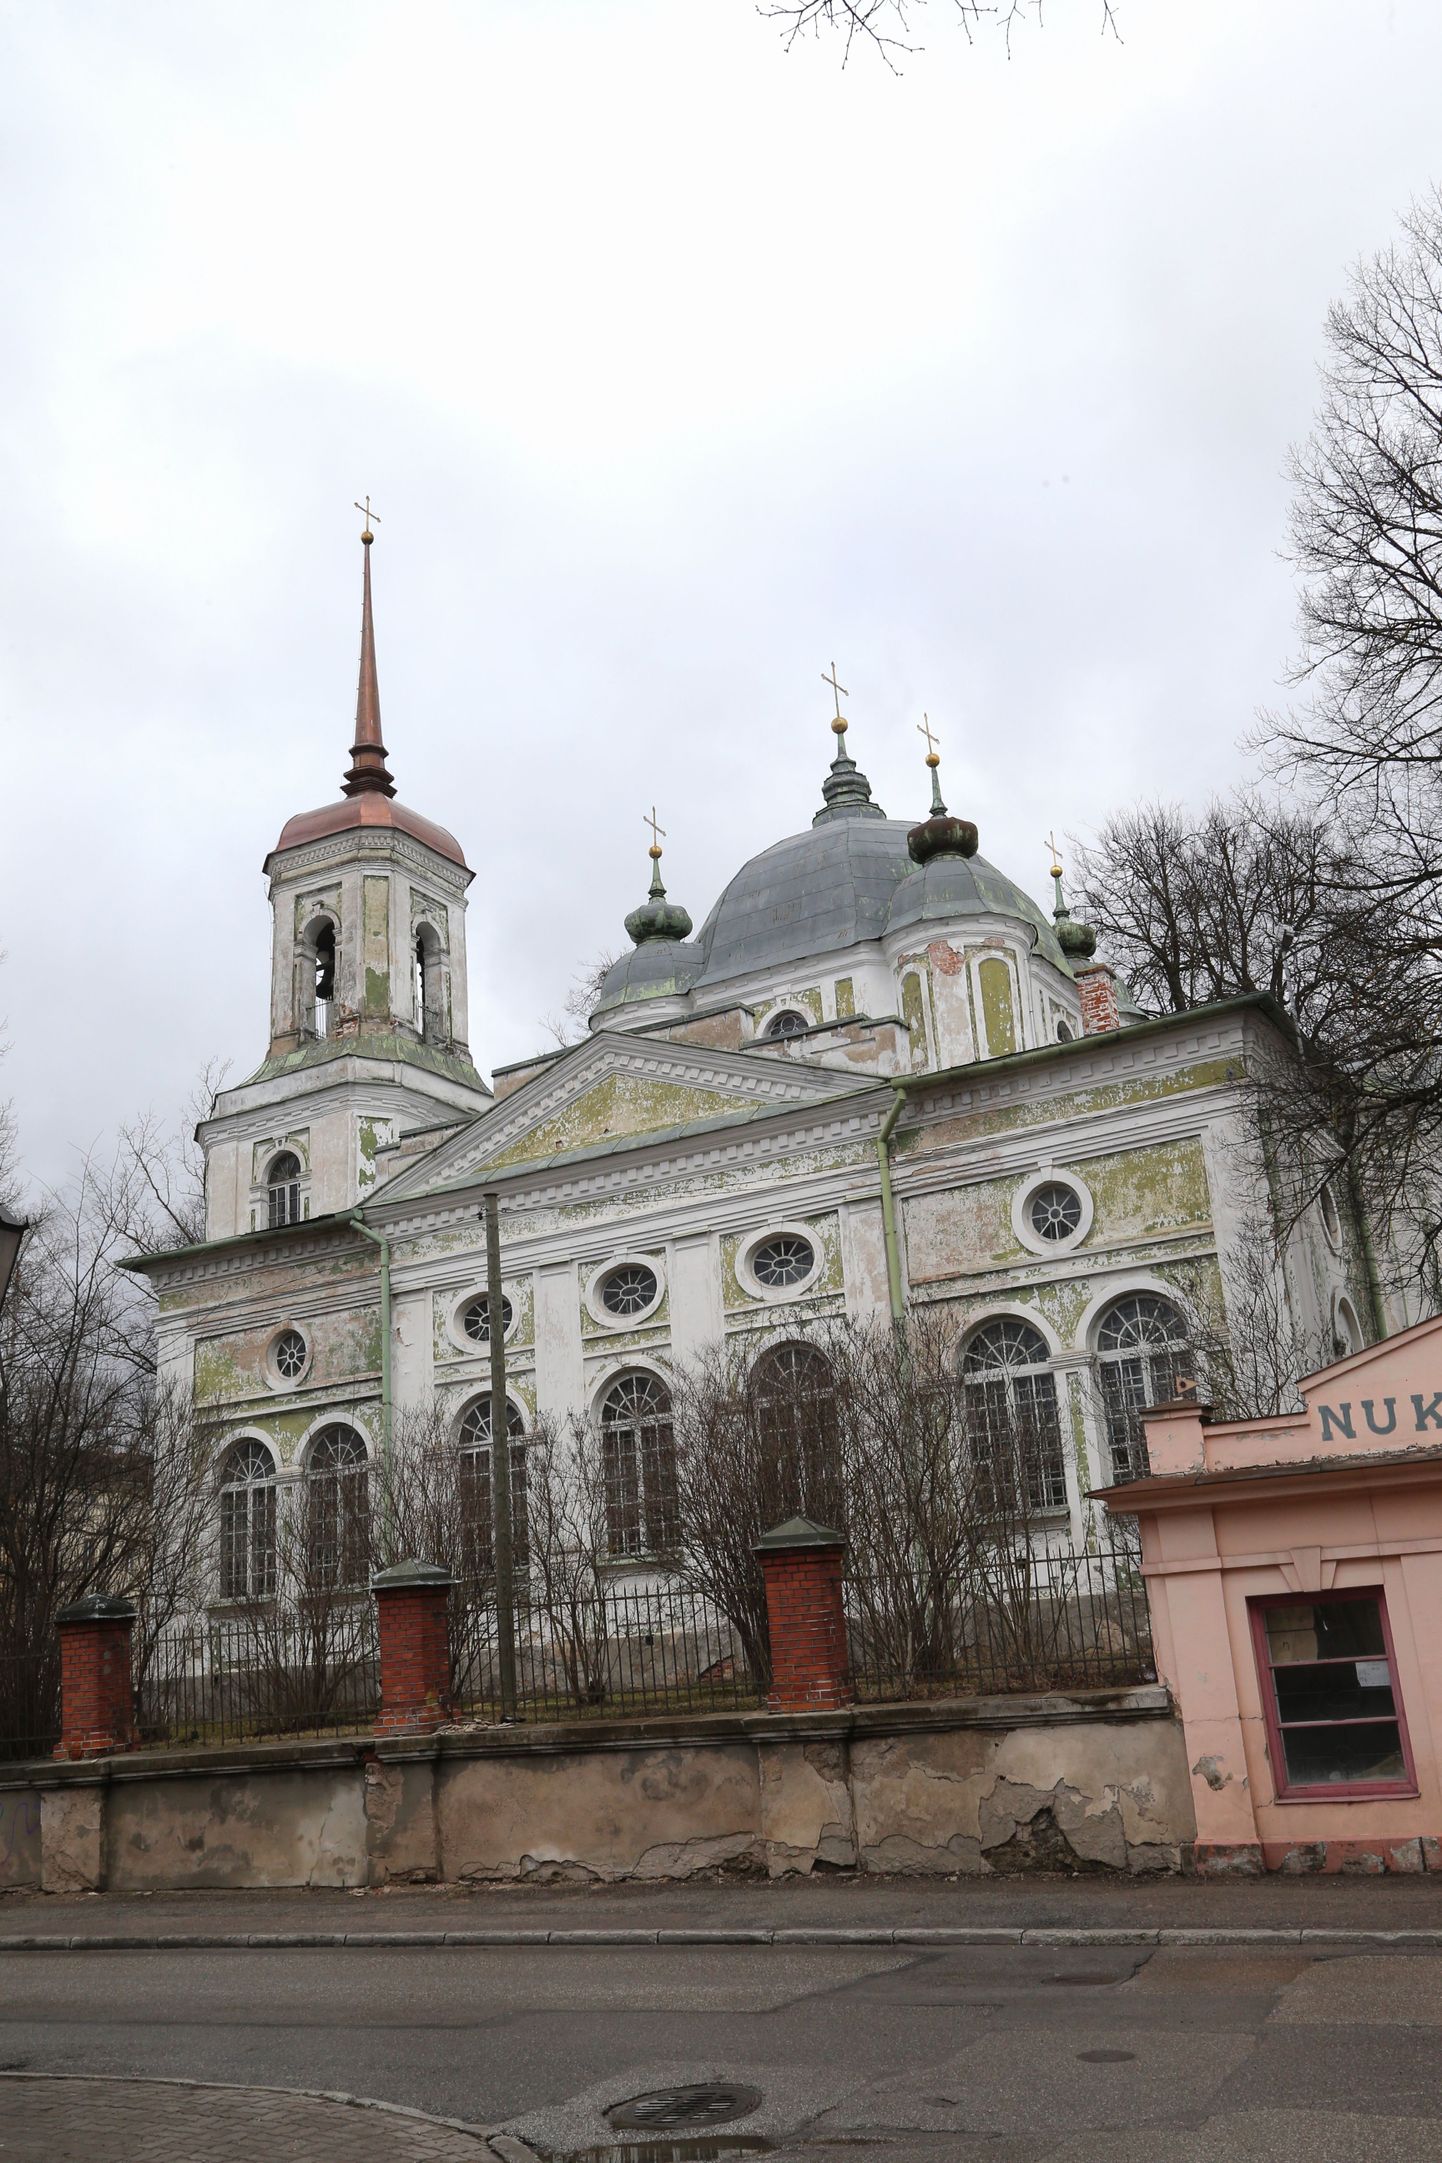 Sel aastal saab korda Tartu Uspenski kiriku kõrgeim osa ehk tamburitorn ja neli nurgatorni.